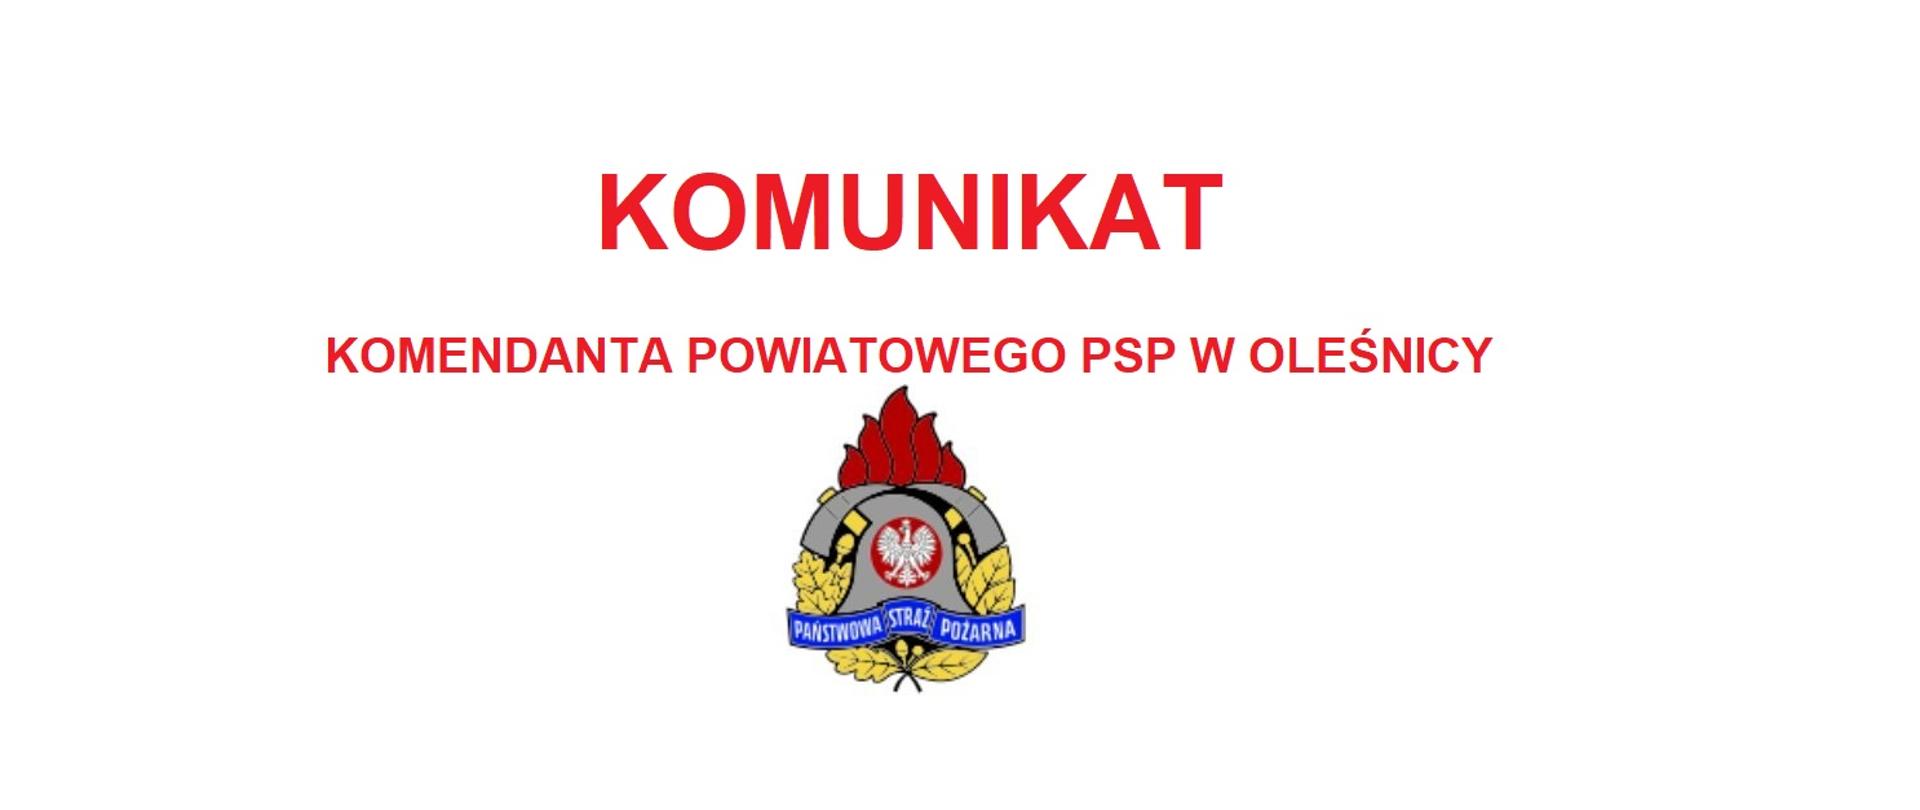 Informacja o komunikacie KP PSP w Oleśnicy. Na zdjęciu loko PSP